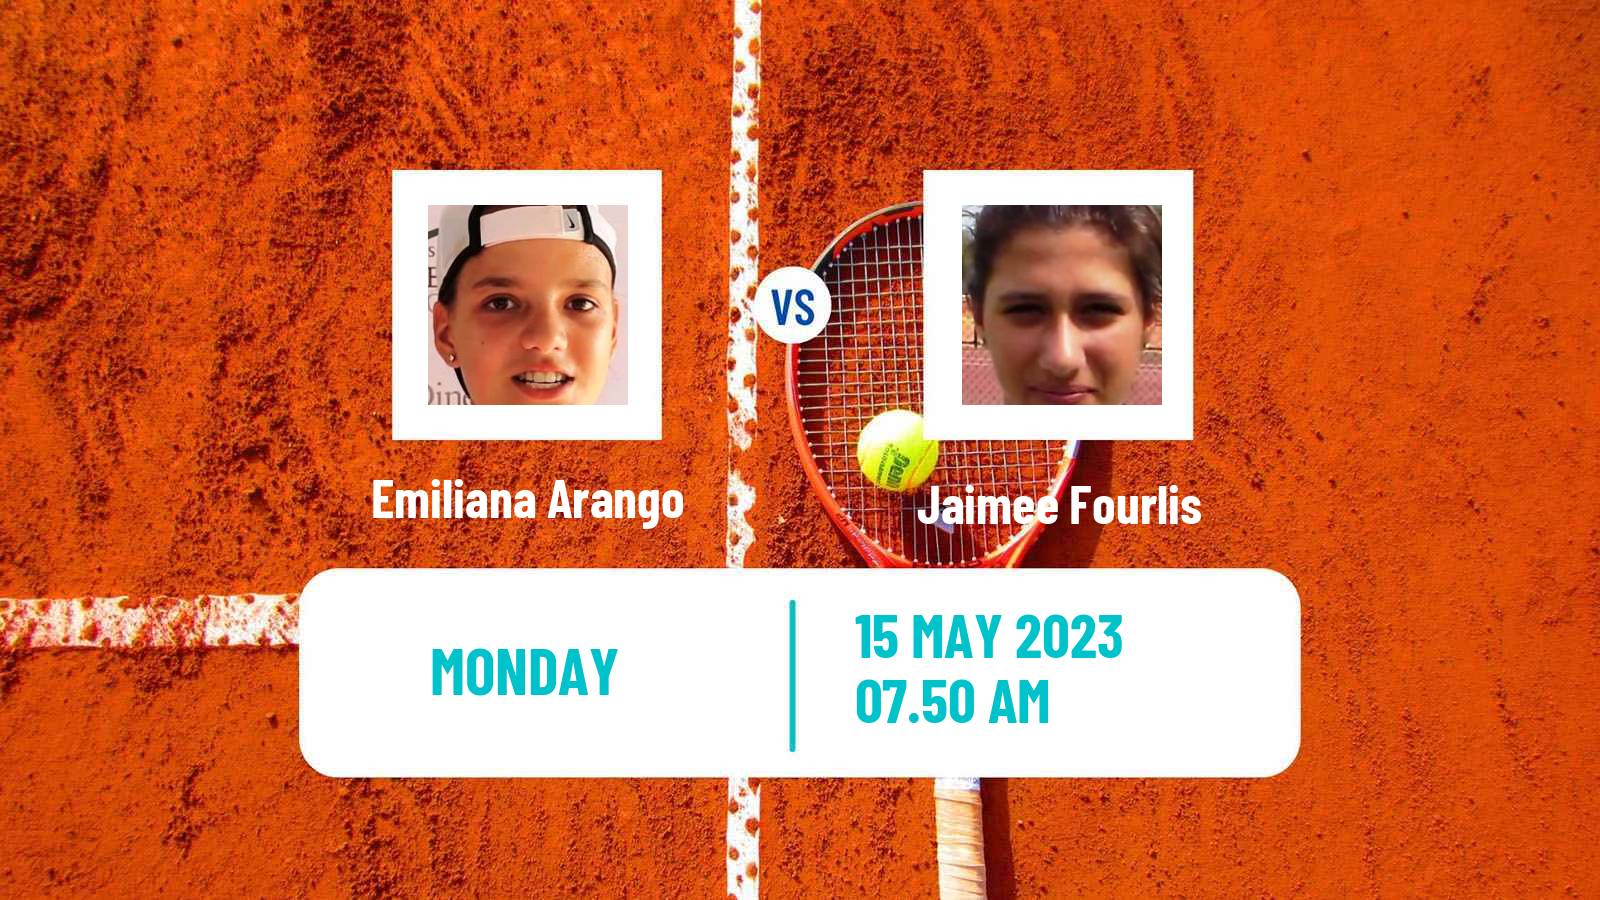 Tennis ITF Tournaments Emiliana Arango - Jaimee Fourlis